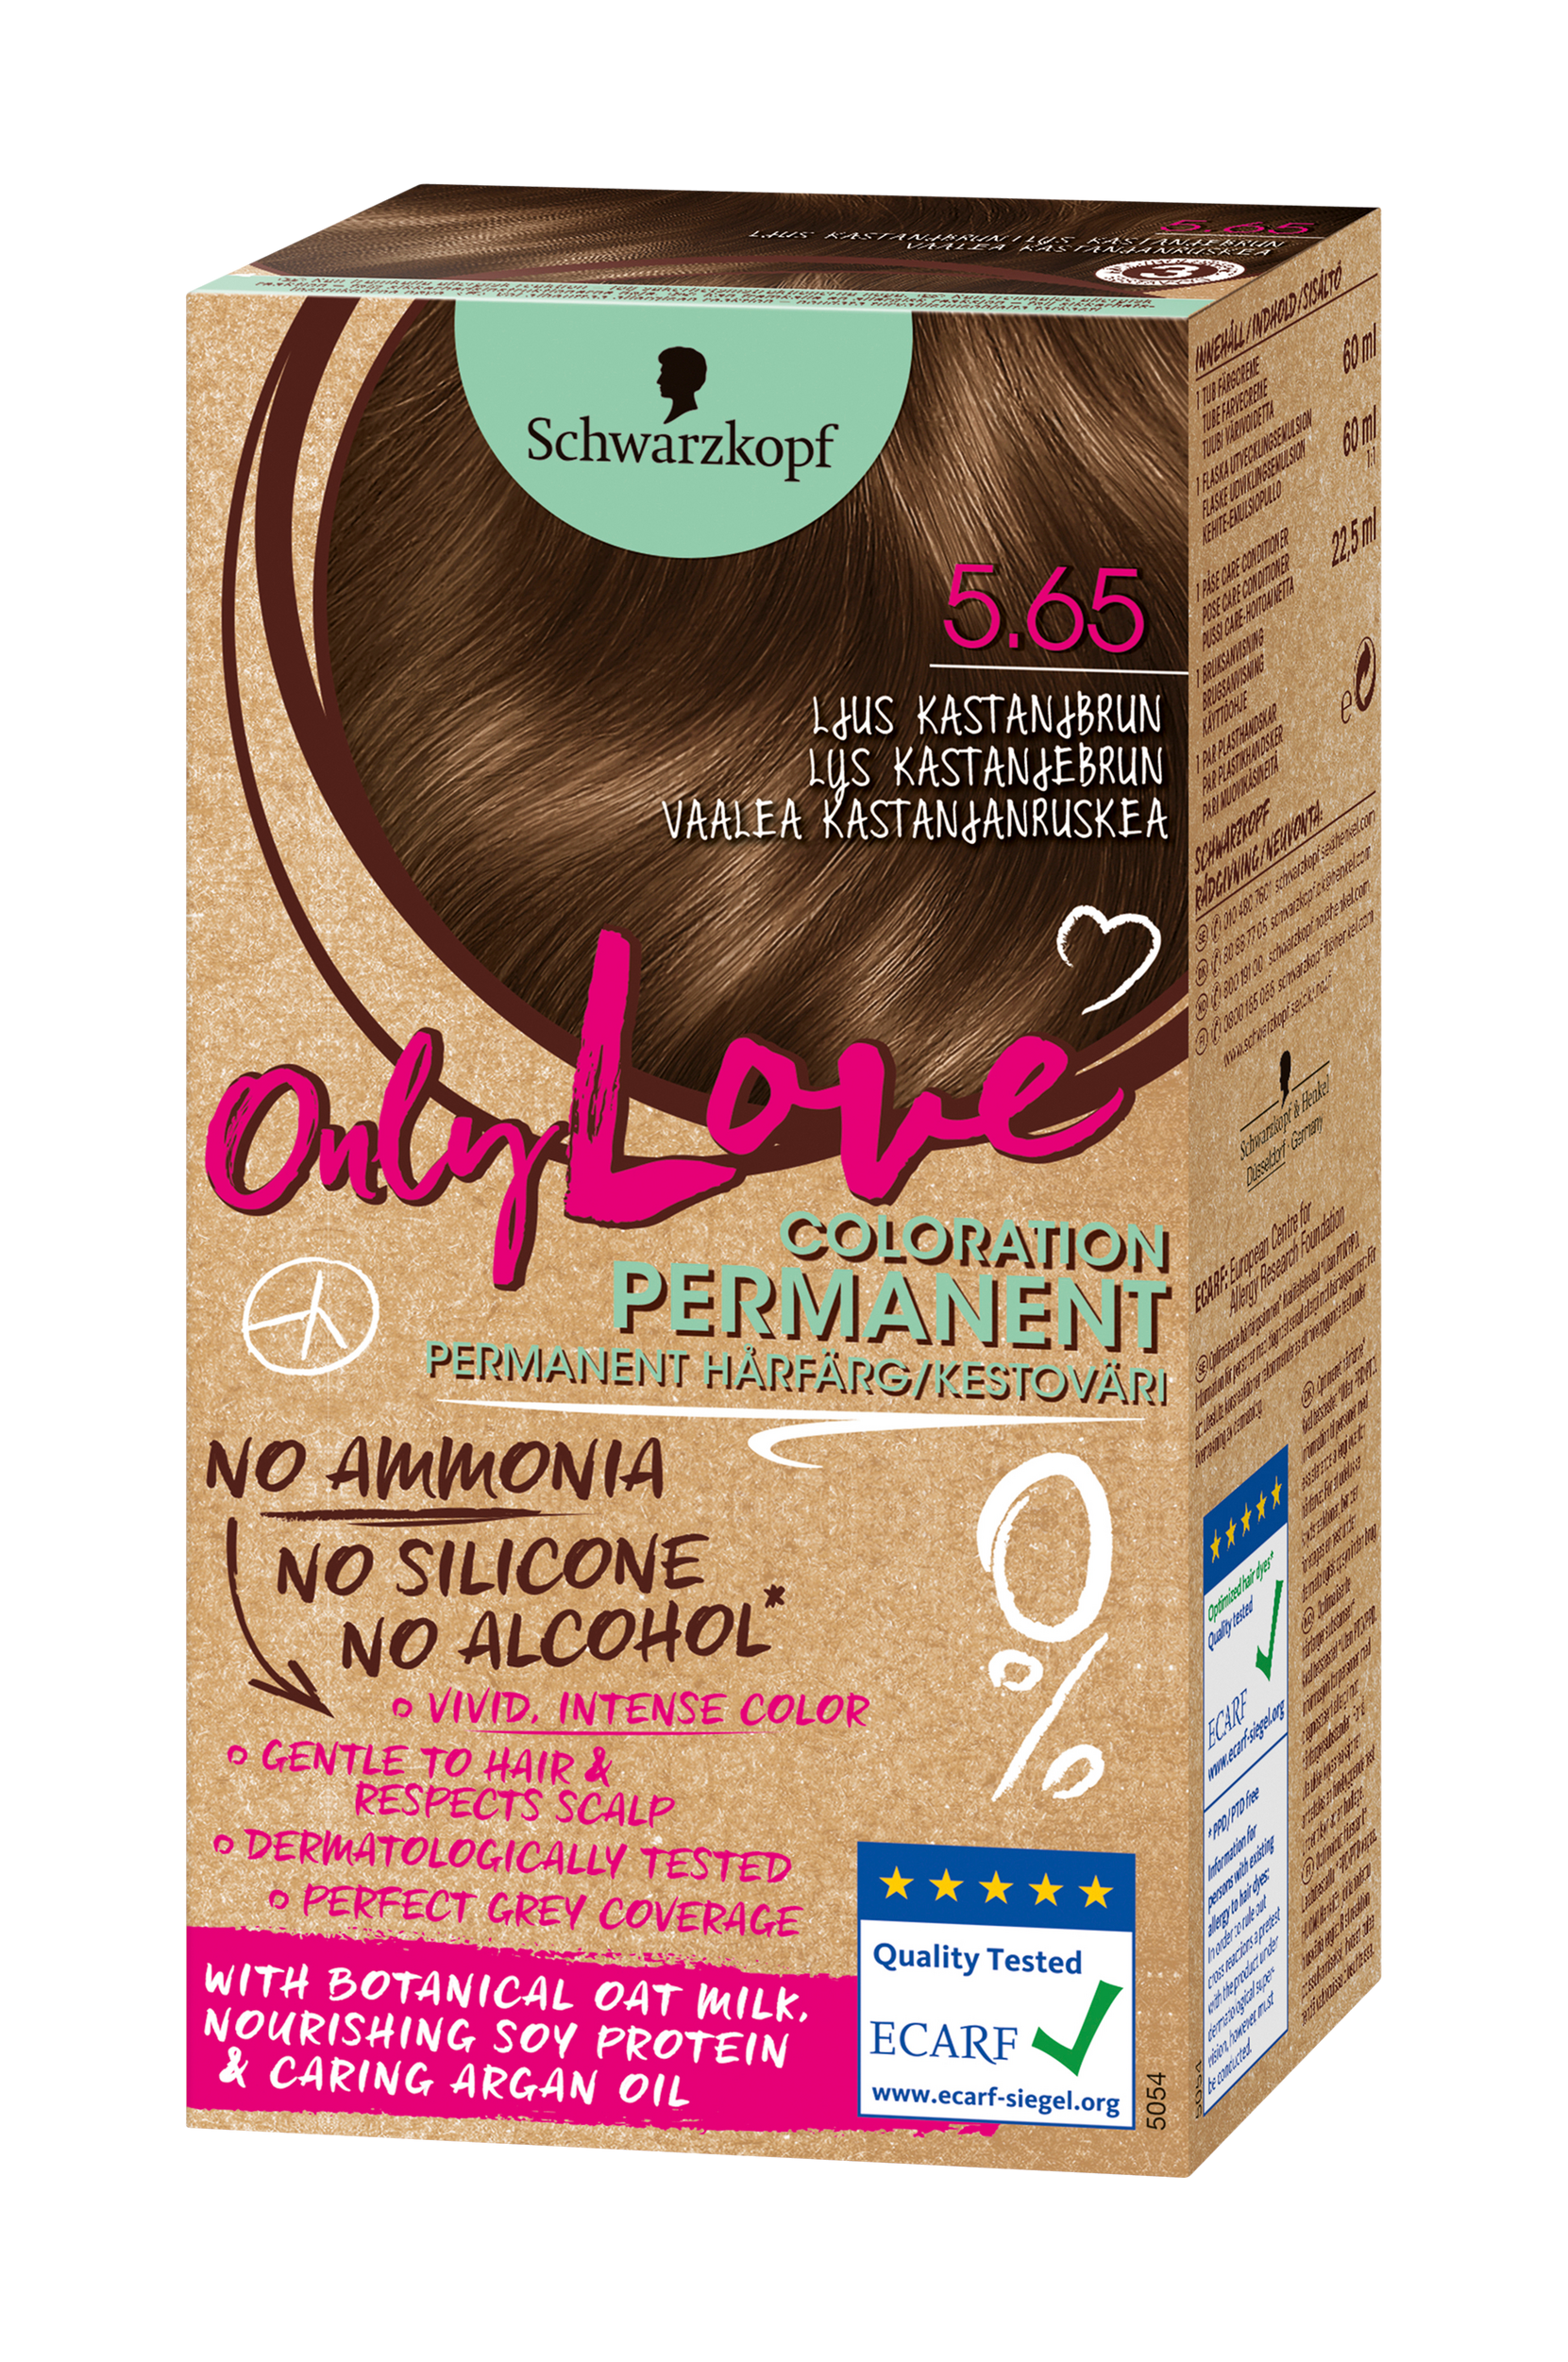 Only Love 5.65 Vaalea kastanjanruskea, Schwarzkopf